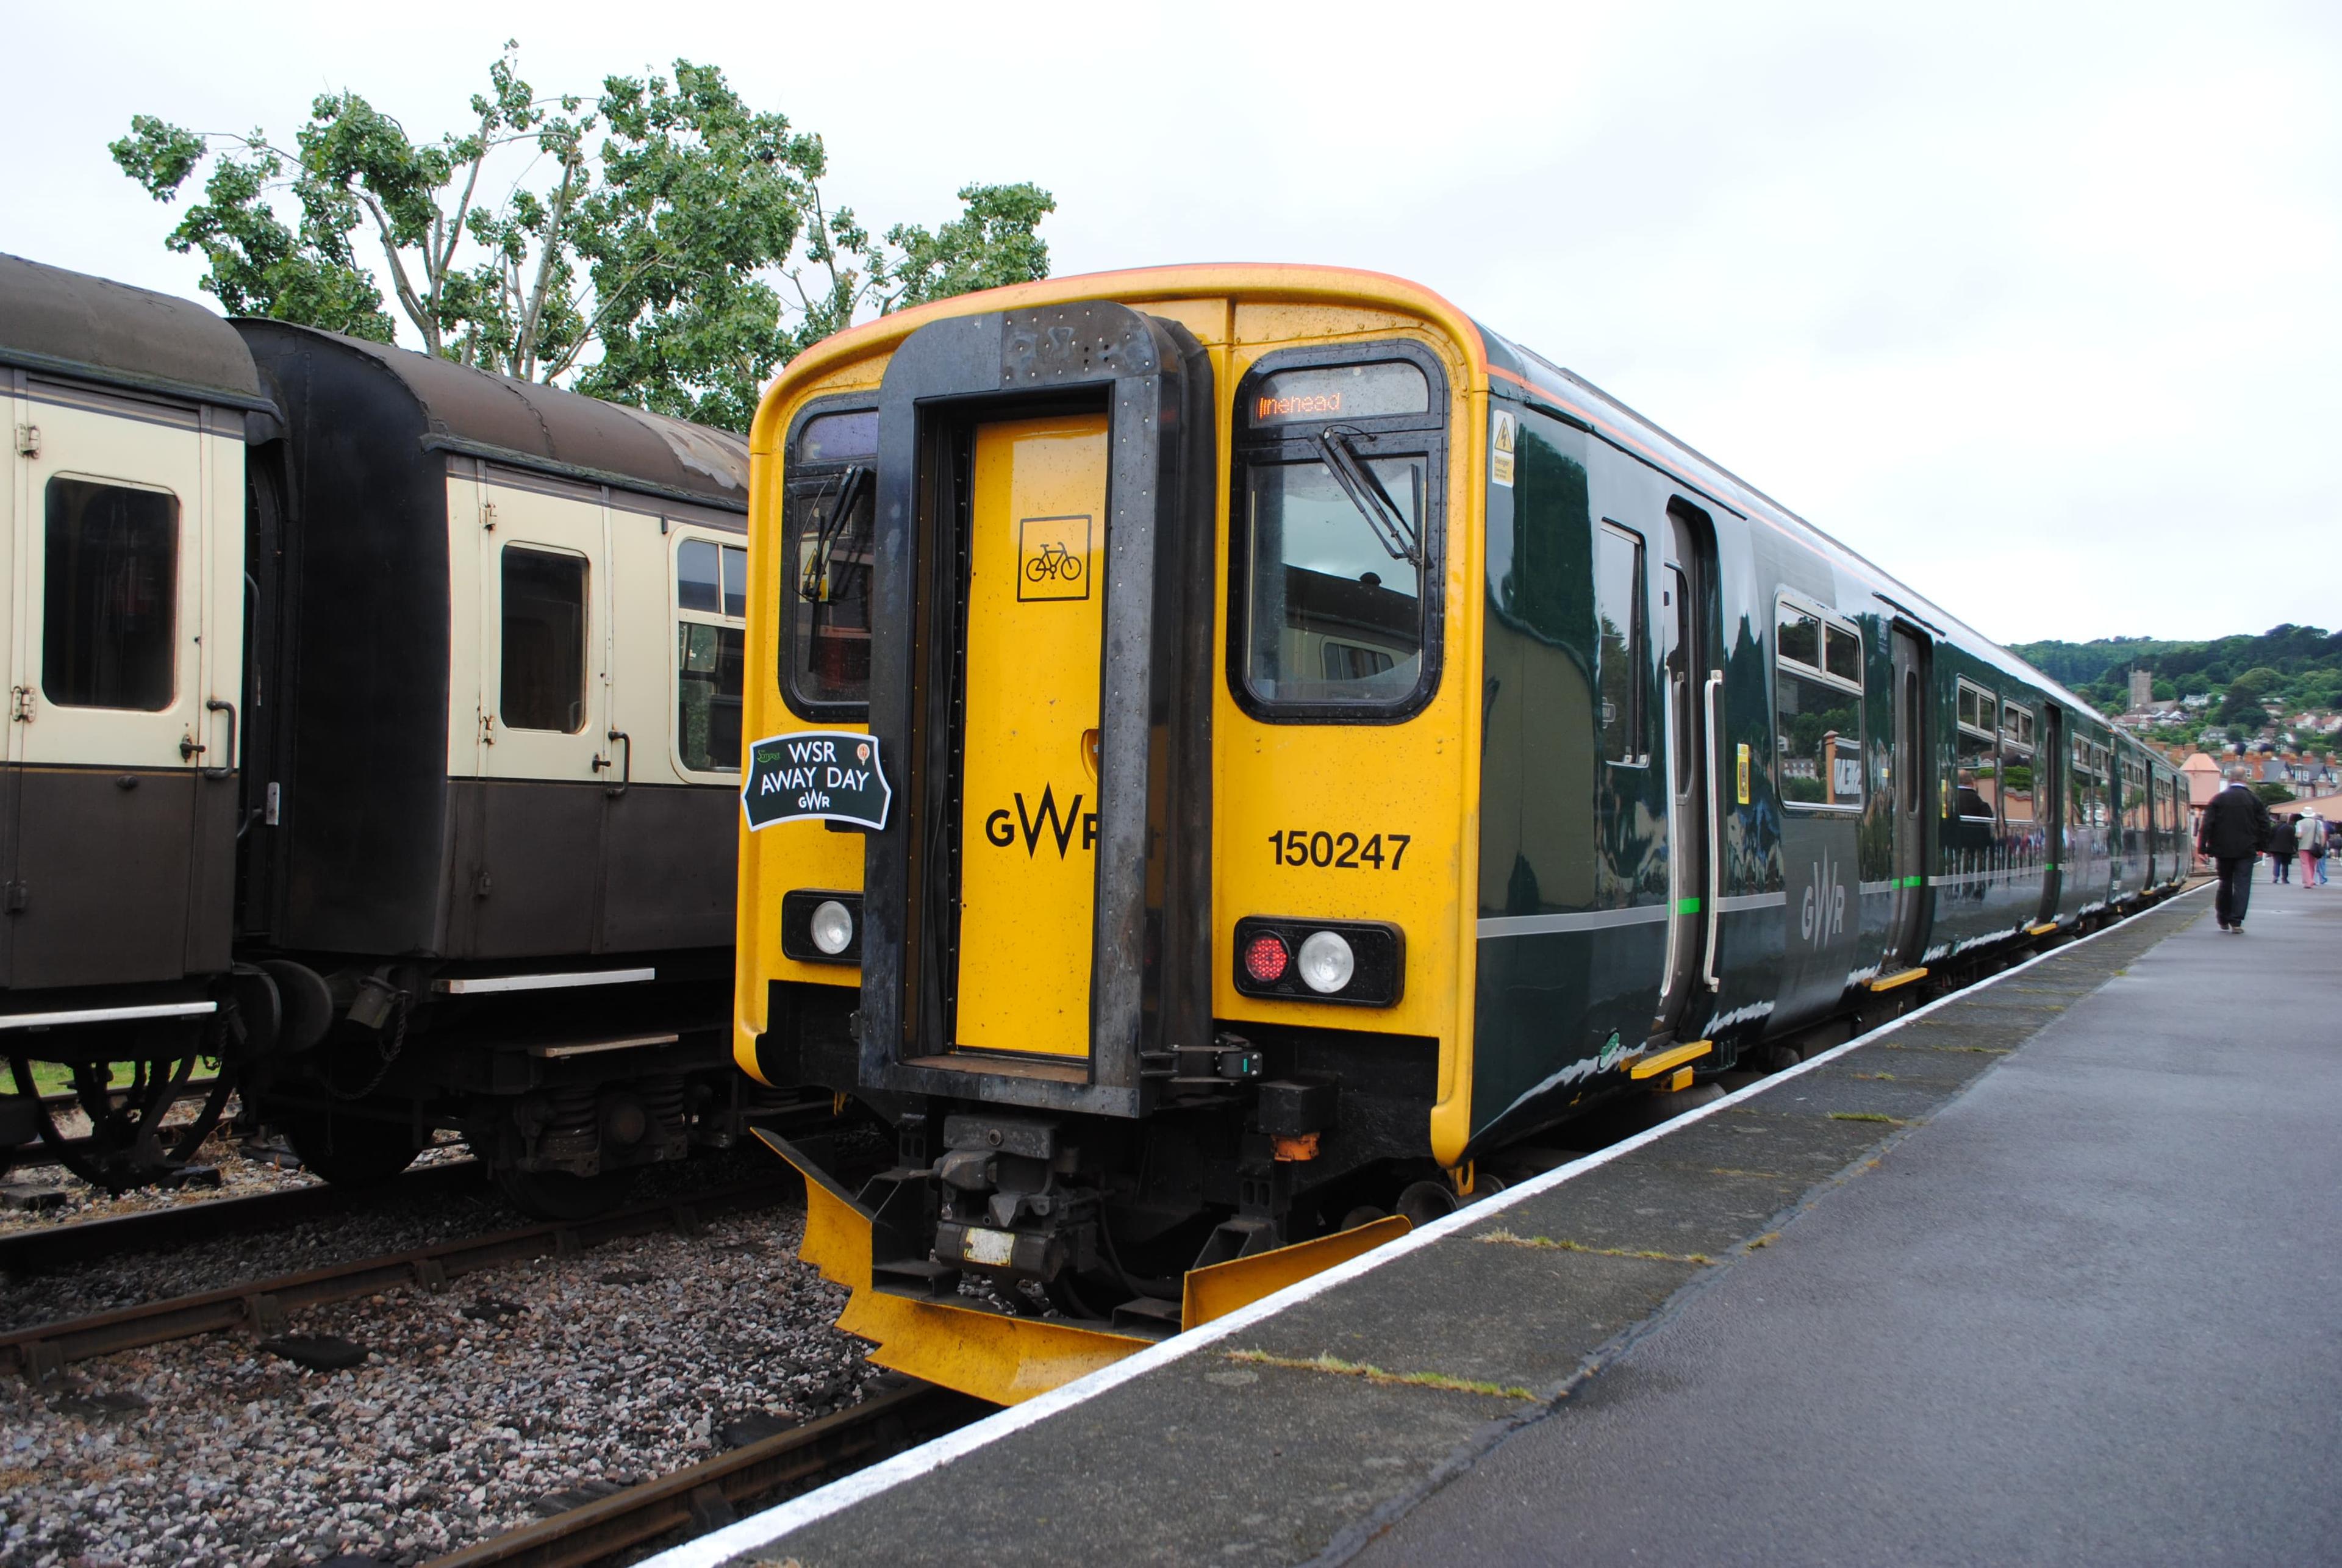 GWR West Somerset Railway